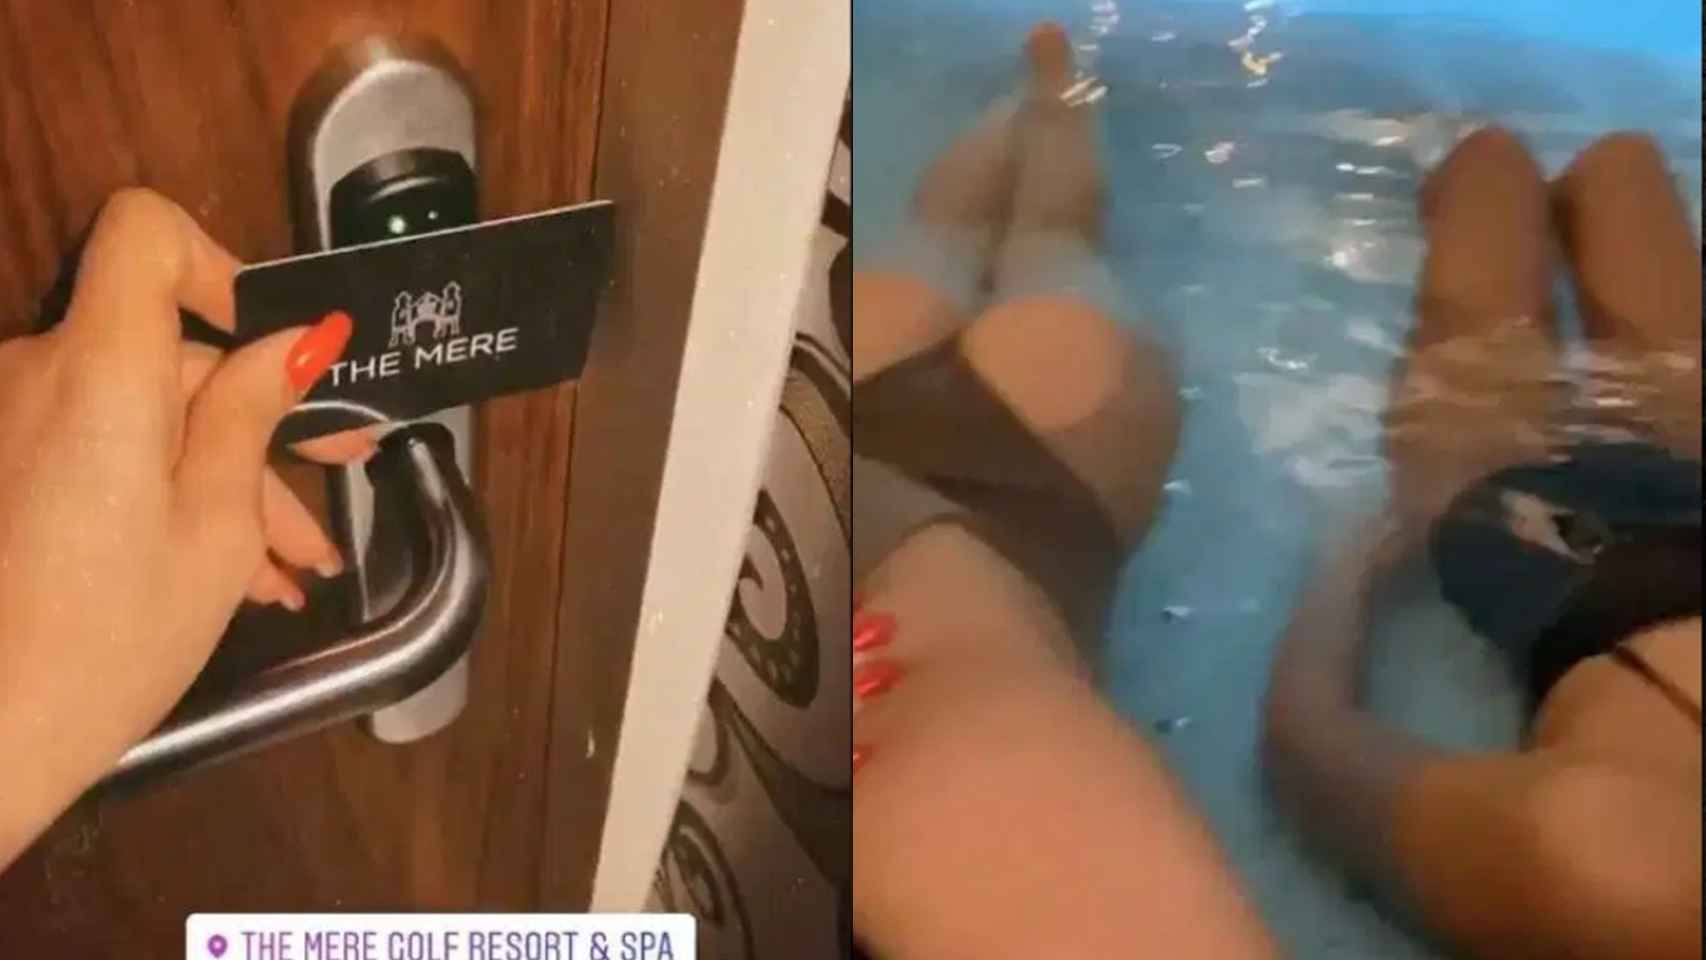 Una imagen abriendo una puerta en el resort y otra en el spa